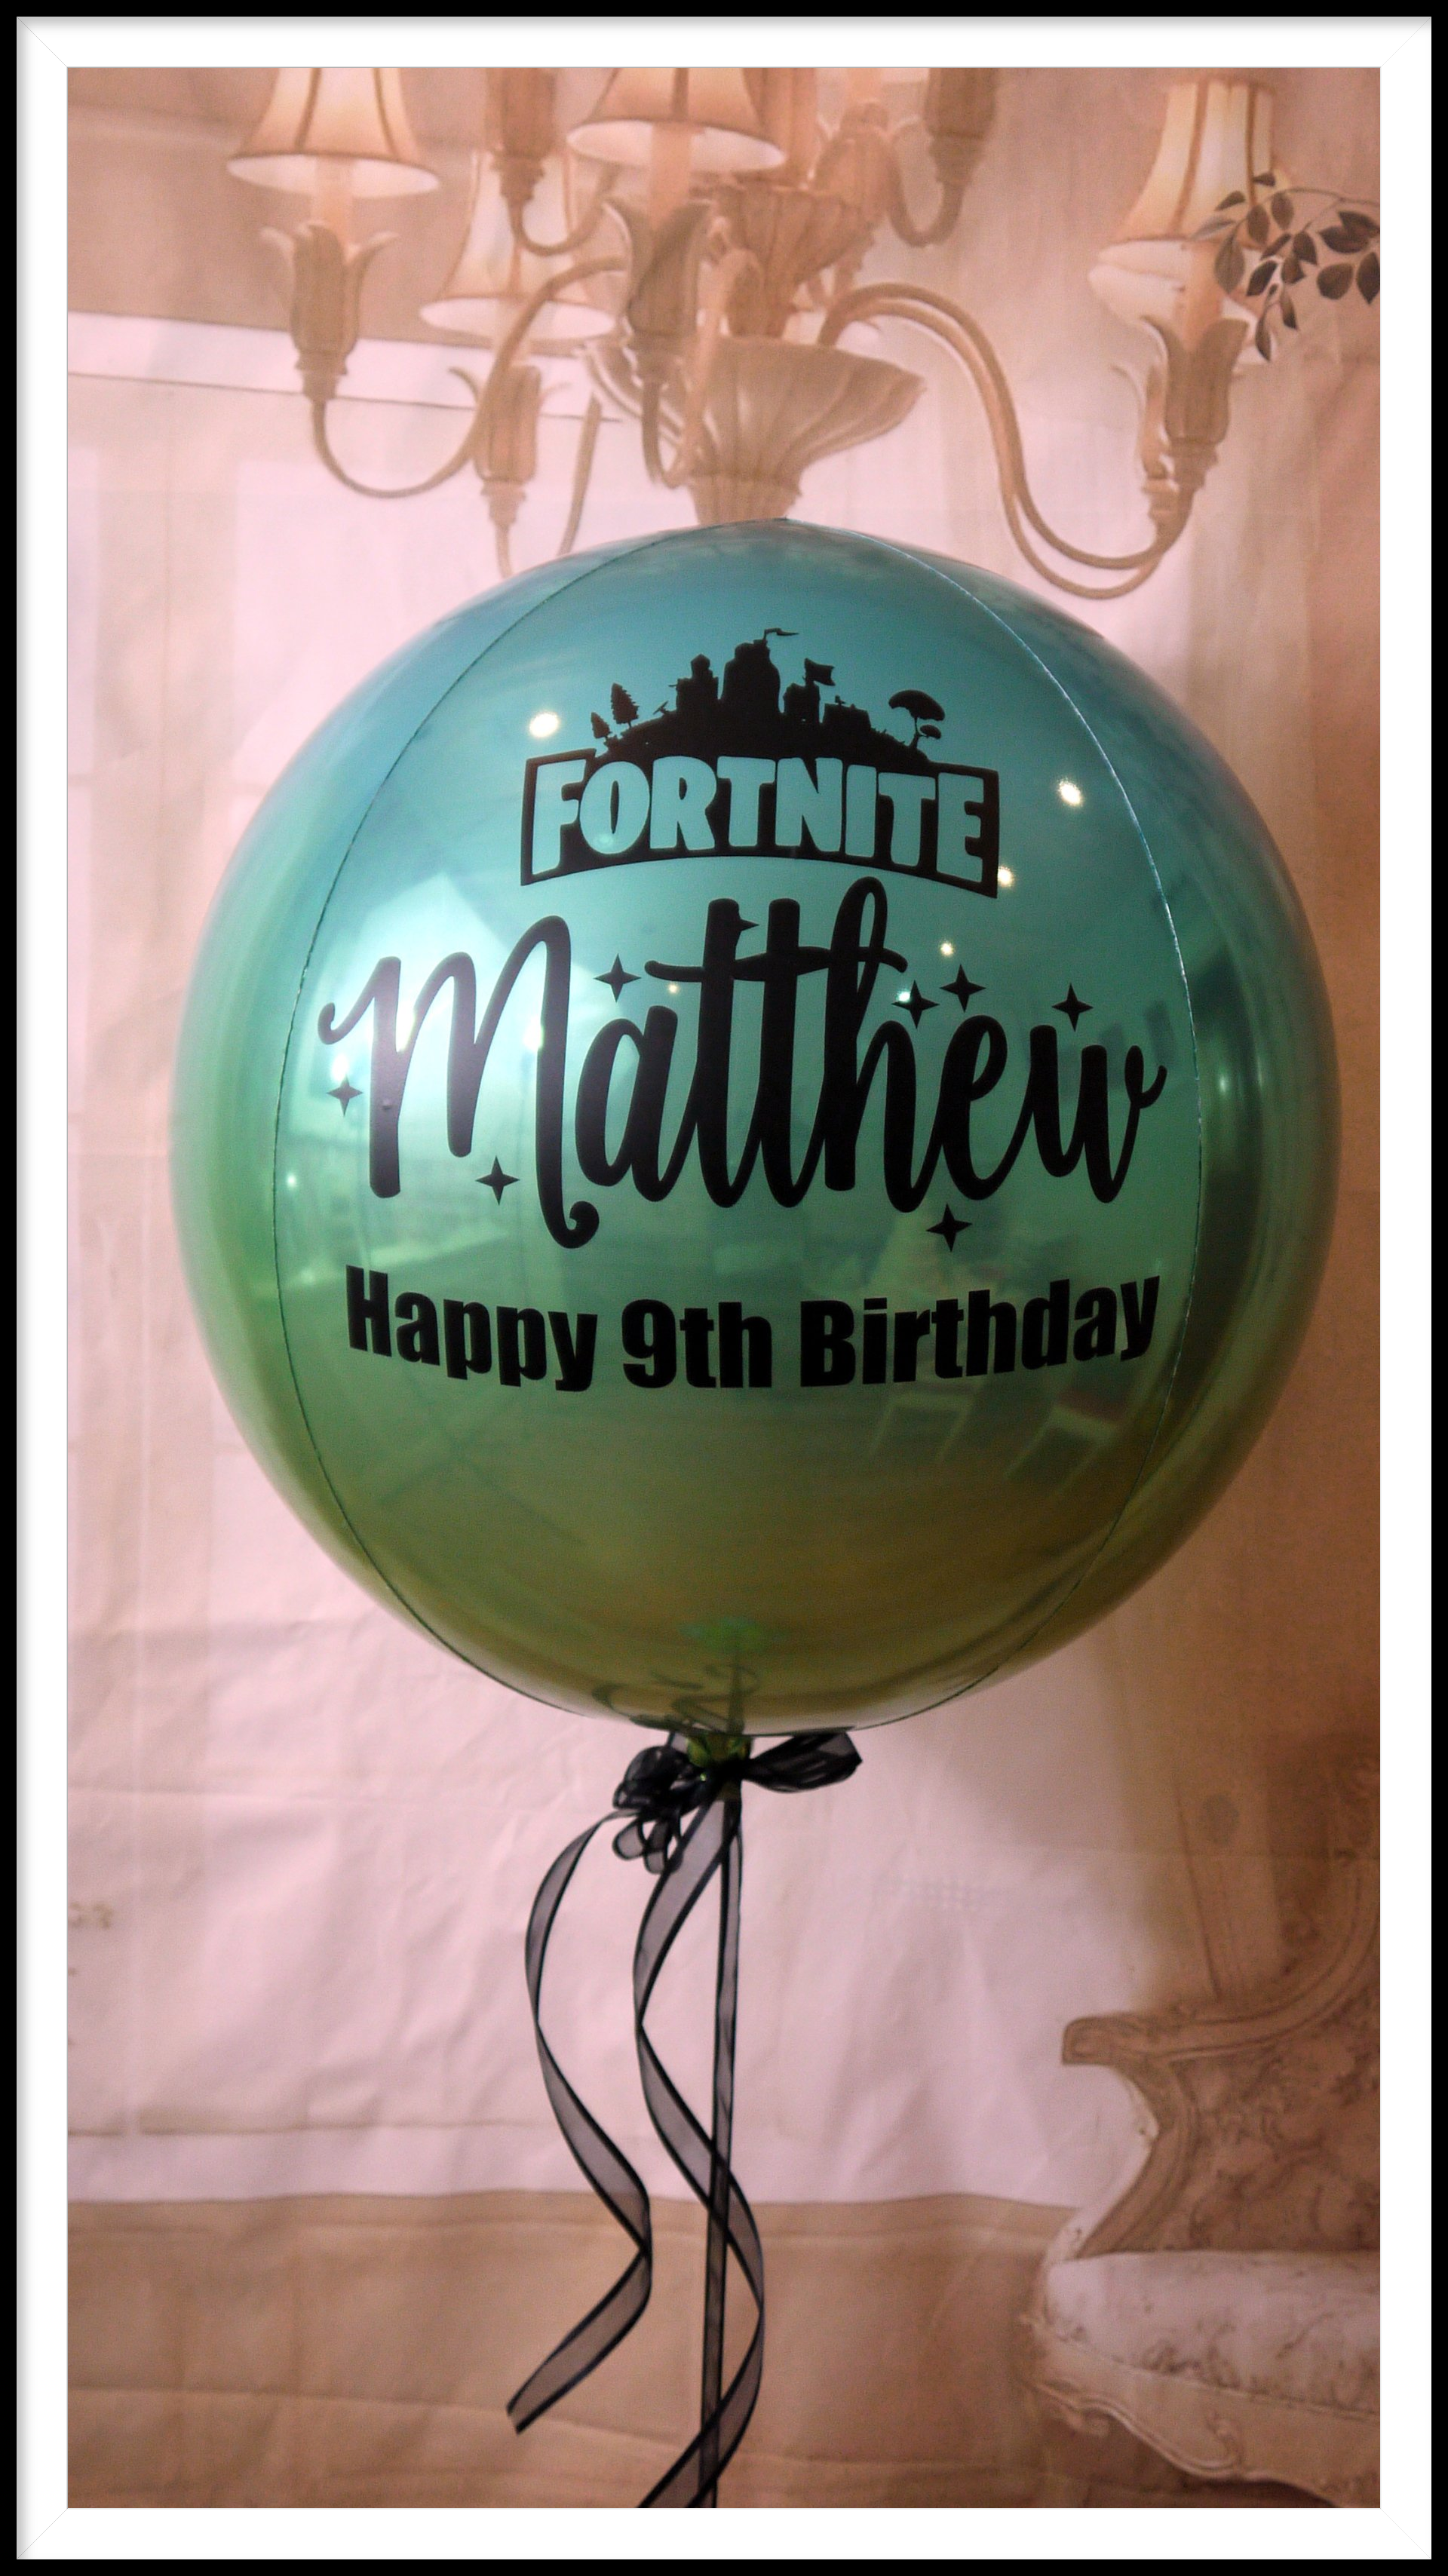 Fortnight balloon